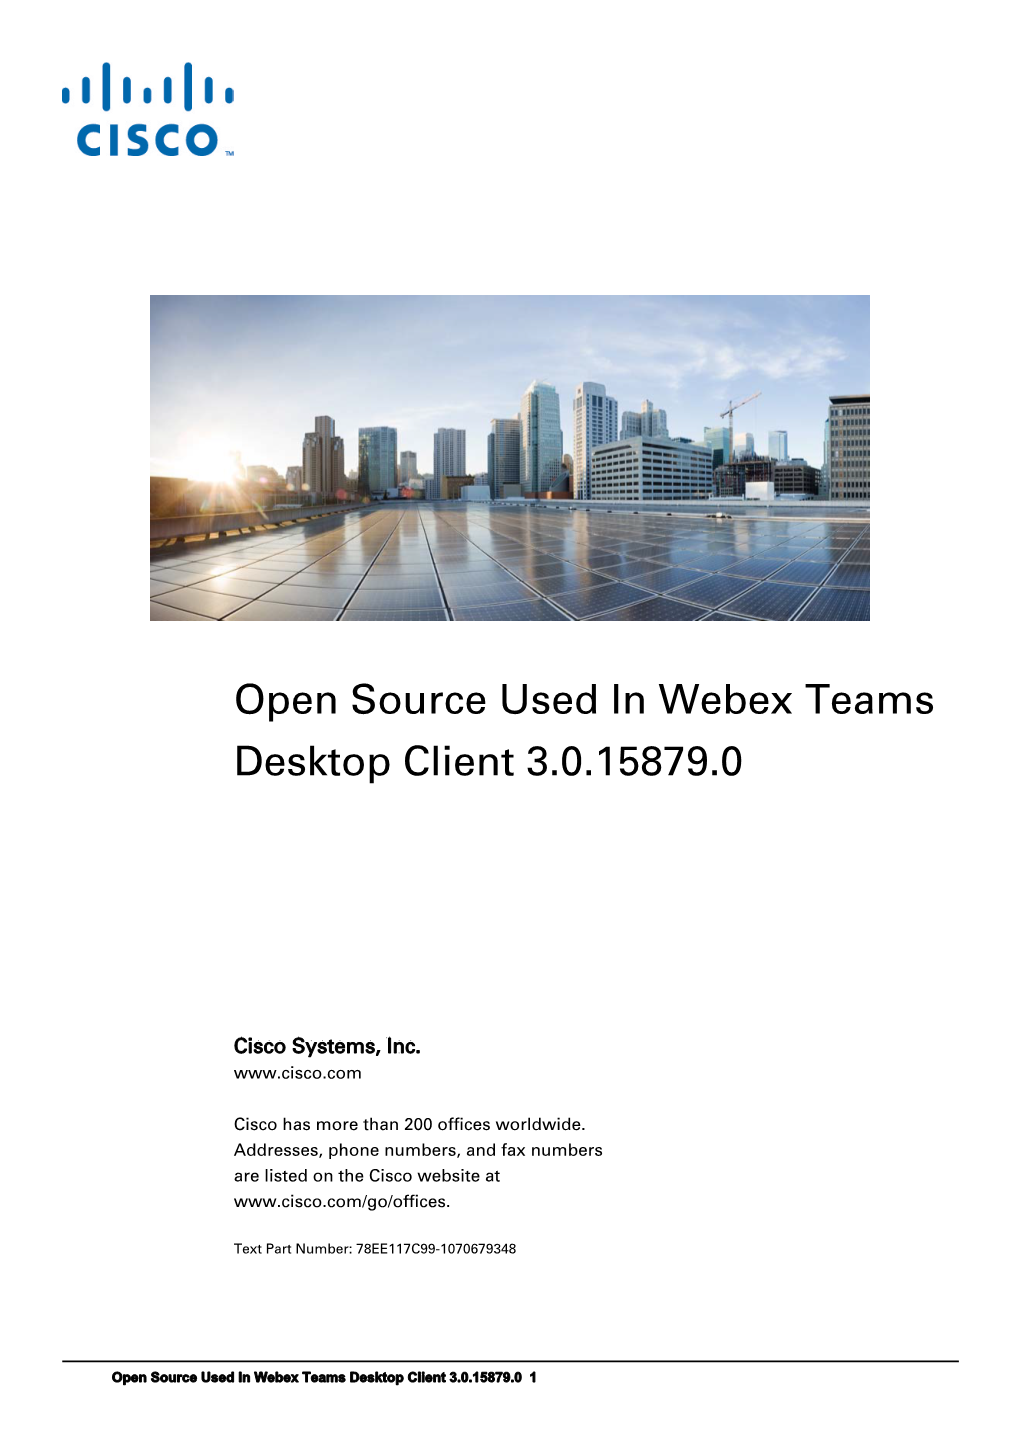 Open Source Used in Webex Teams Desktop Client 3.0.15879.0